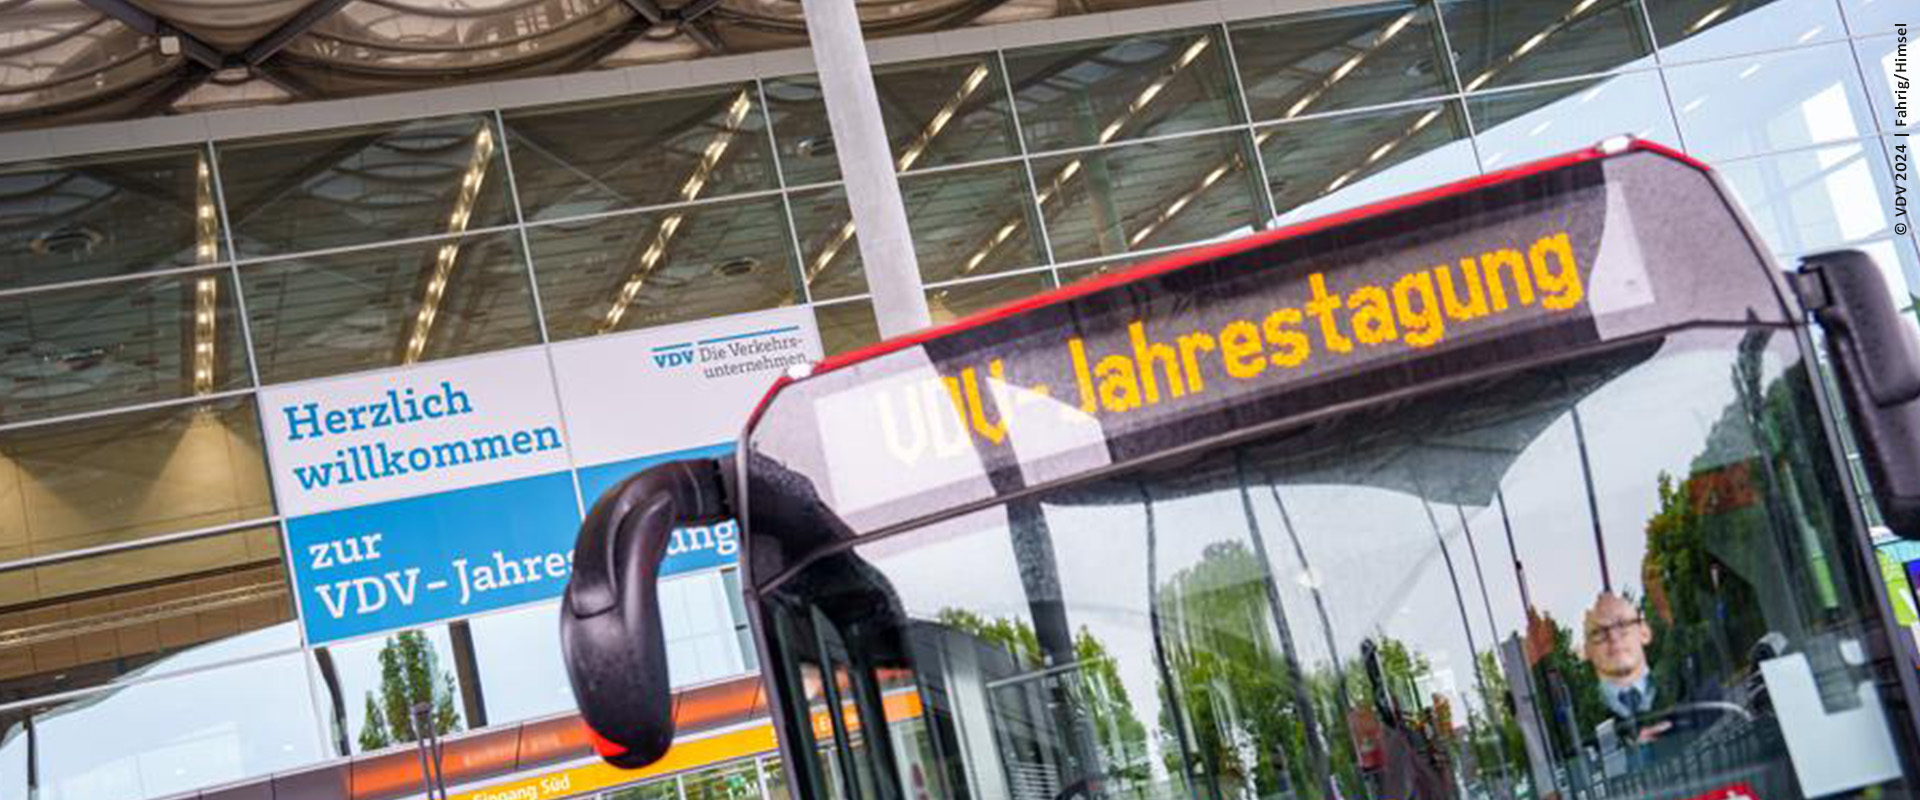 Blick auf einen Linienbus vor der Messe Düsseldorf, im Fahrzeugdisplay ist "VDV-Jahrestagung" zu lesen